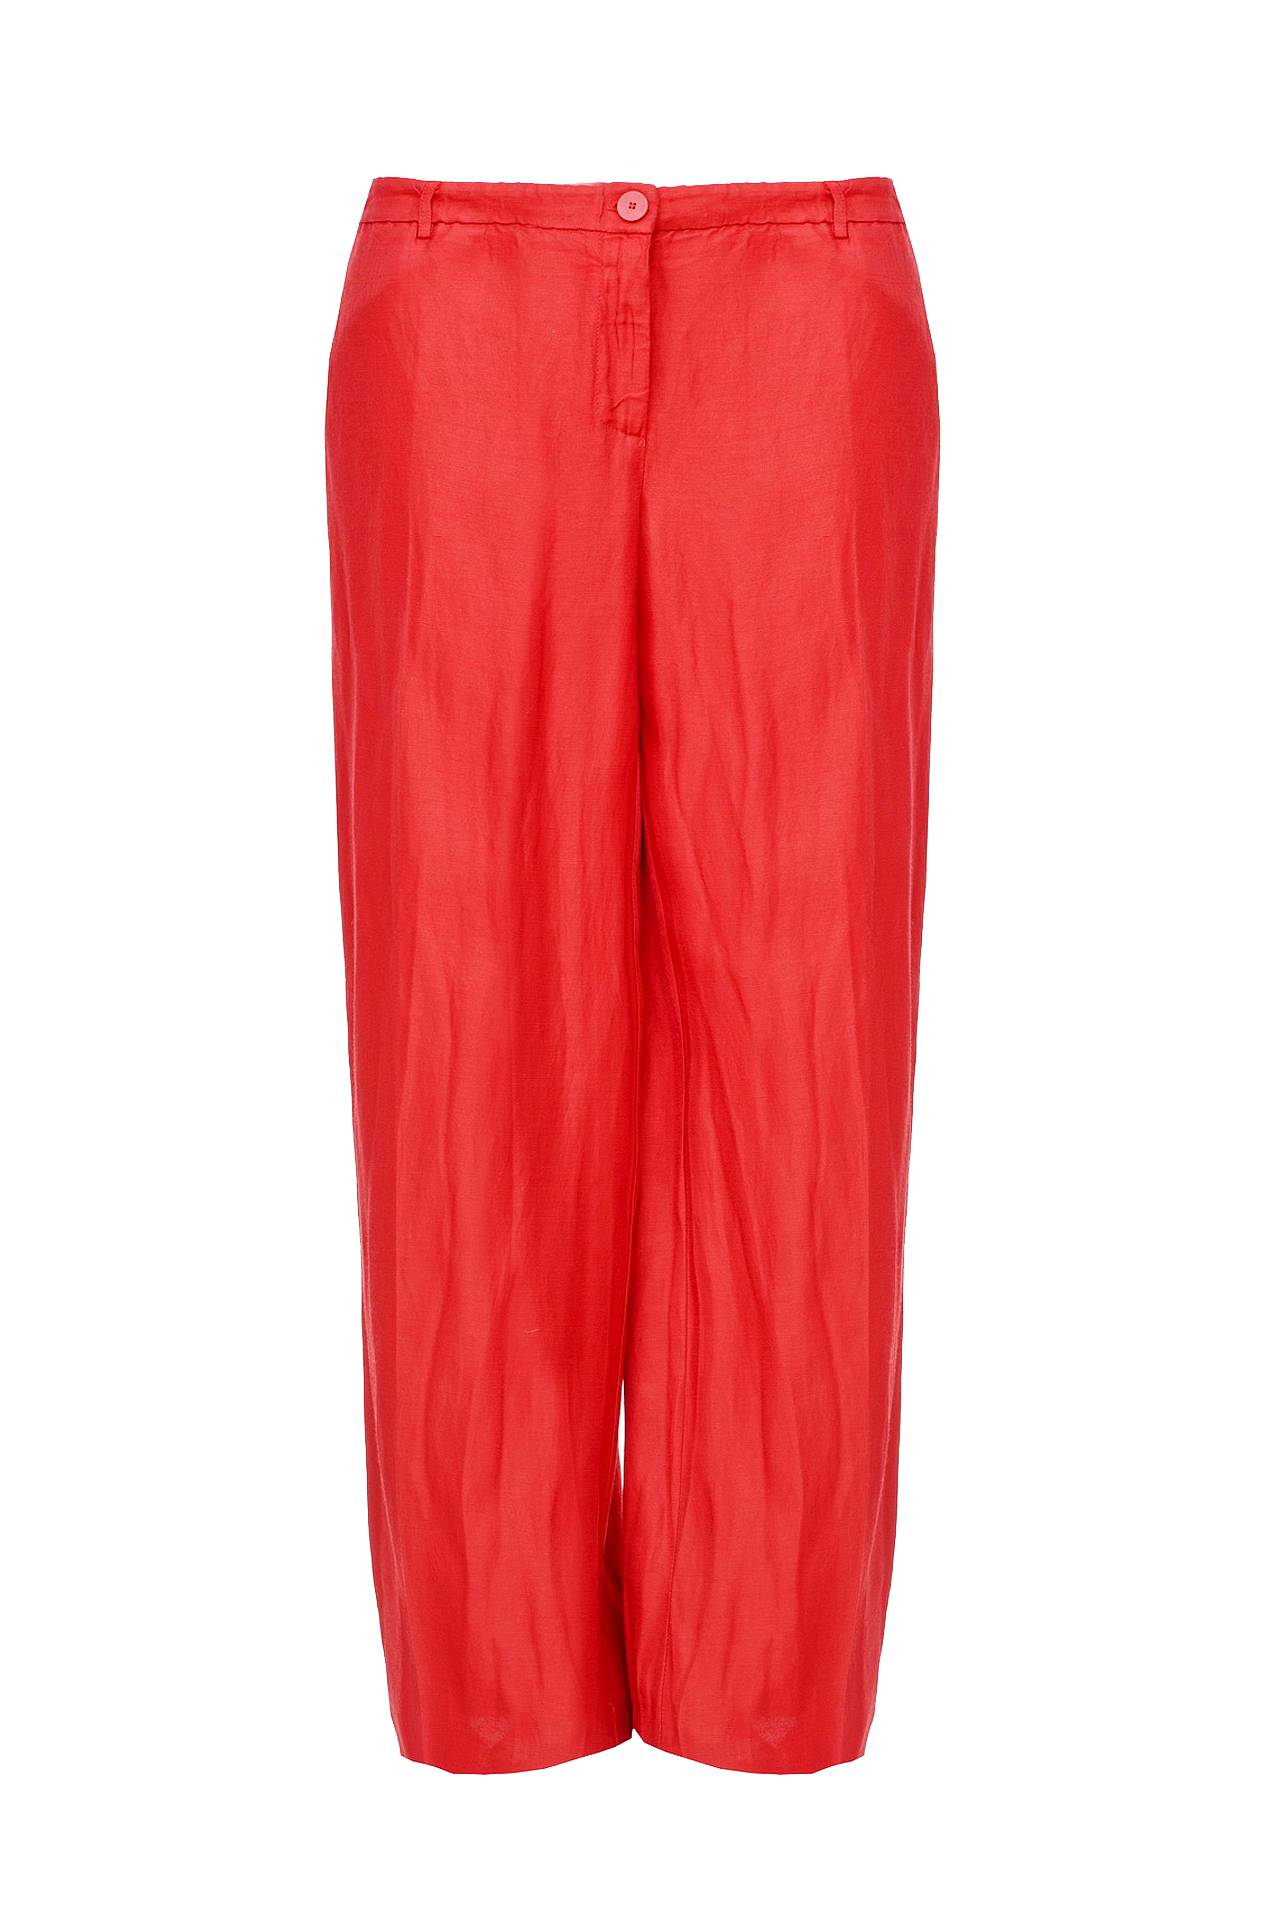 Одежда женская Брюки TWIN-SET (T2S41C/14.2). Купить за 6320 руб.